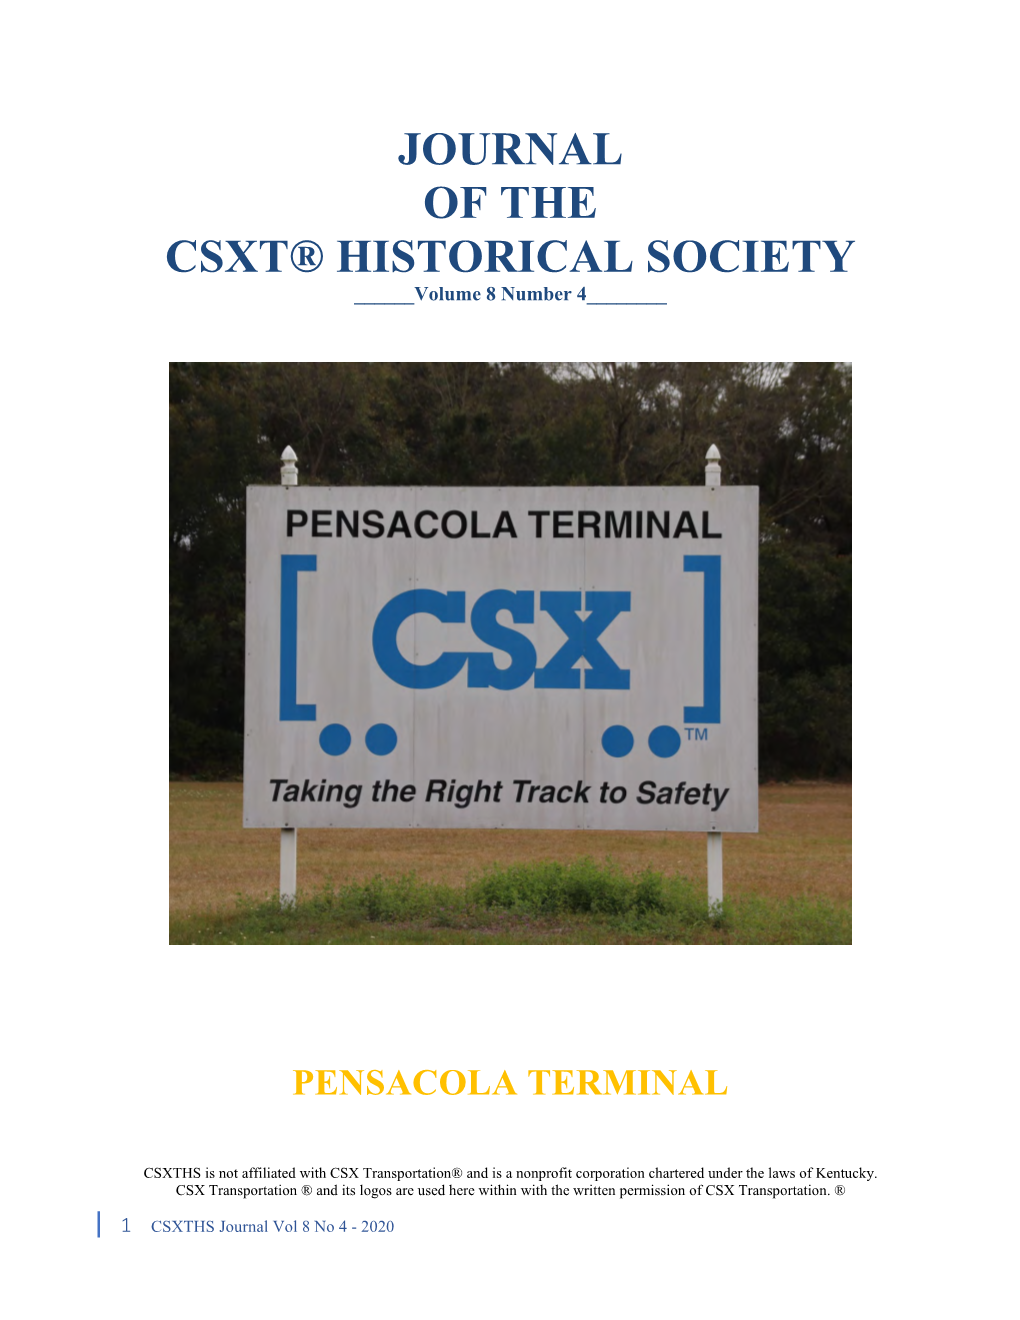 Pensacola Terminal